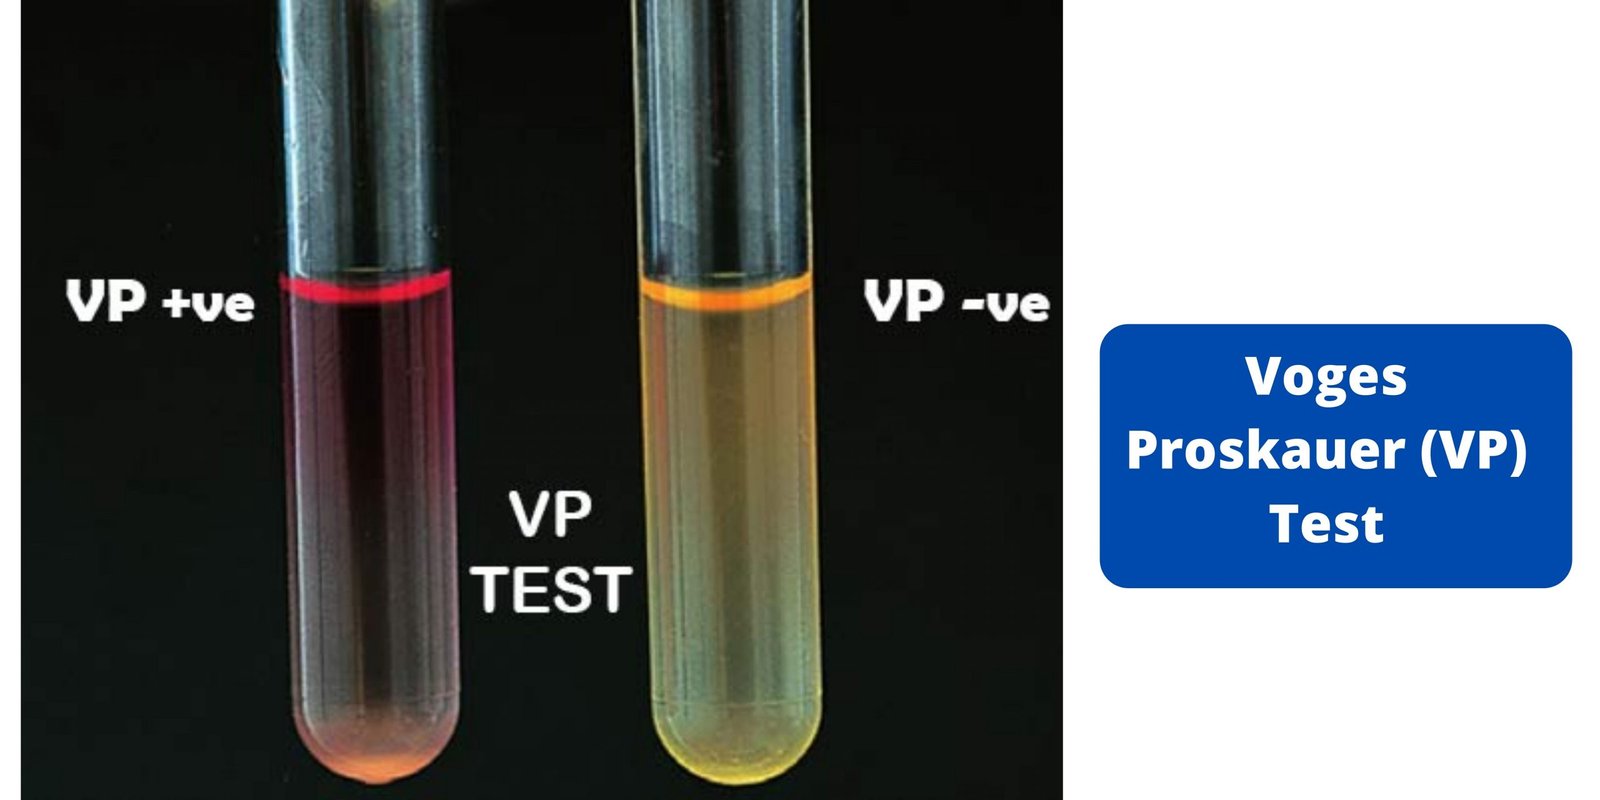 Voges Proskauer (VP) Test - Principle, Procedure, Results